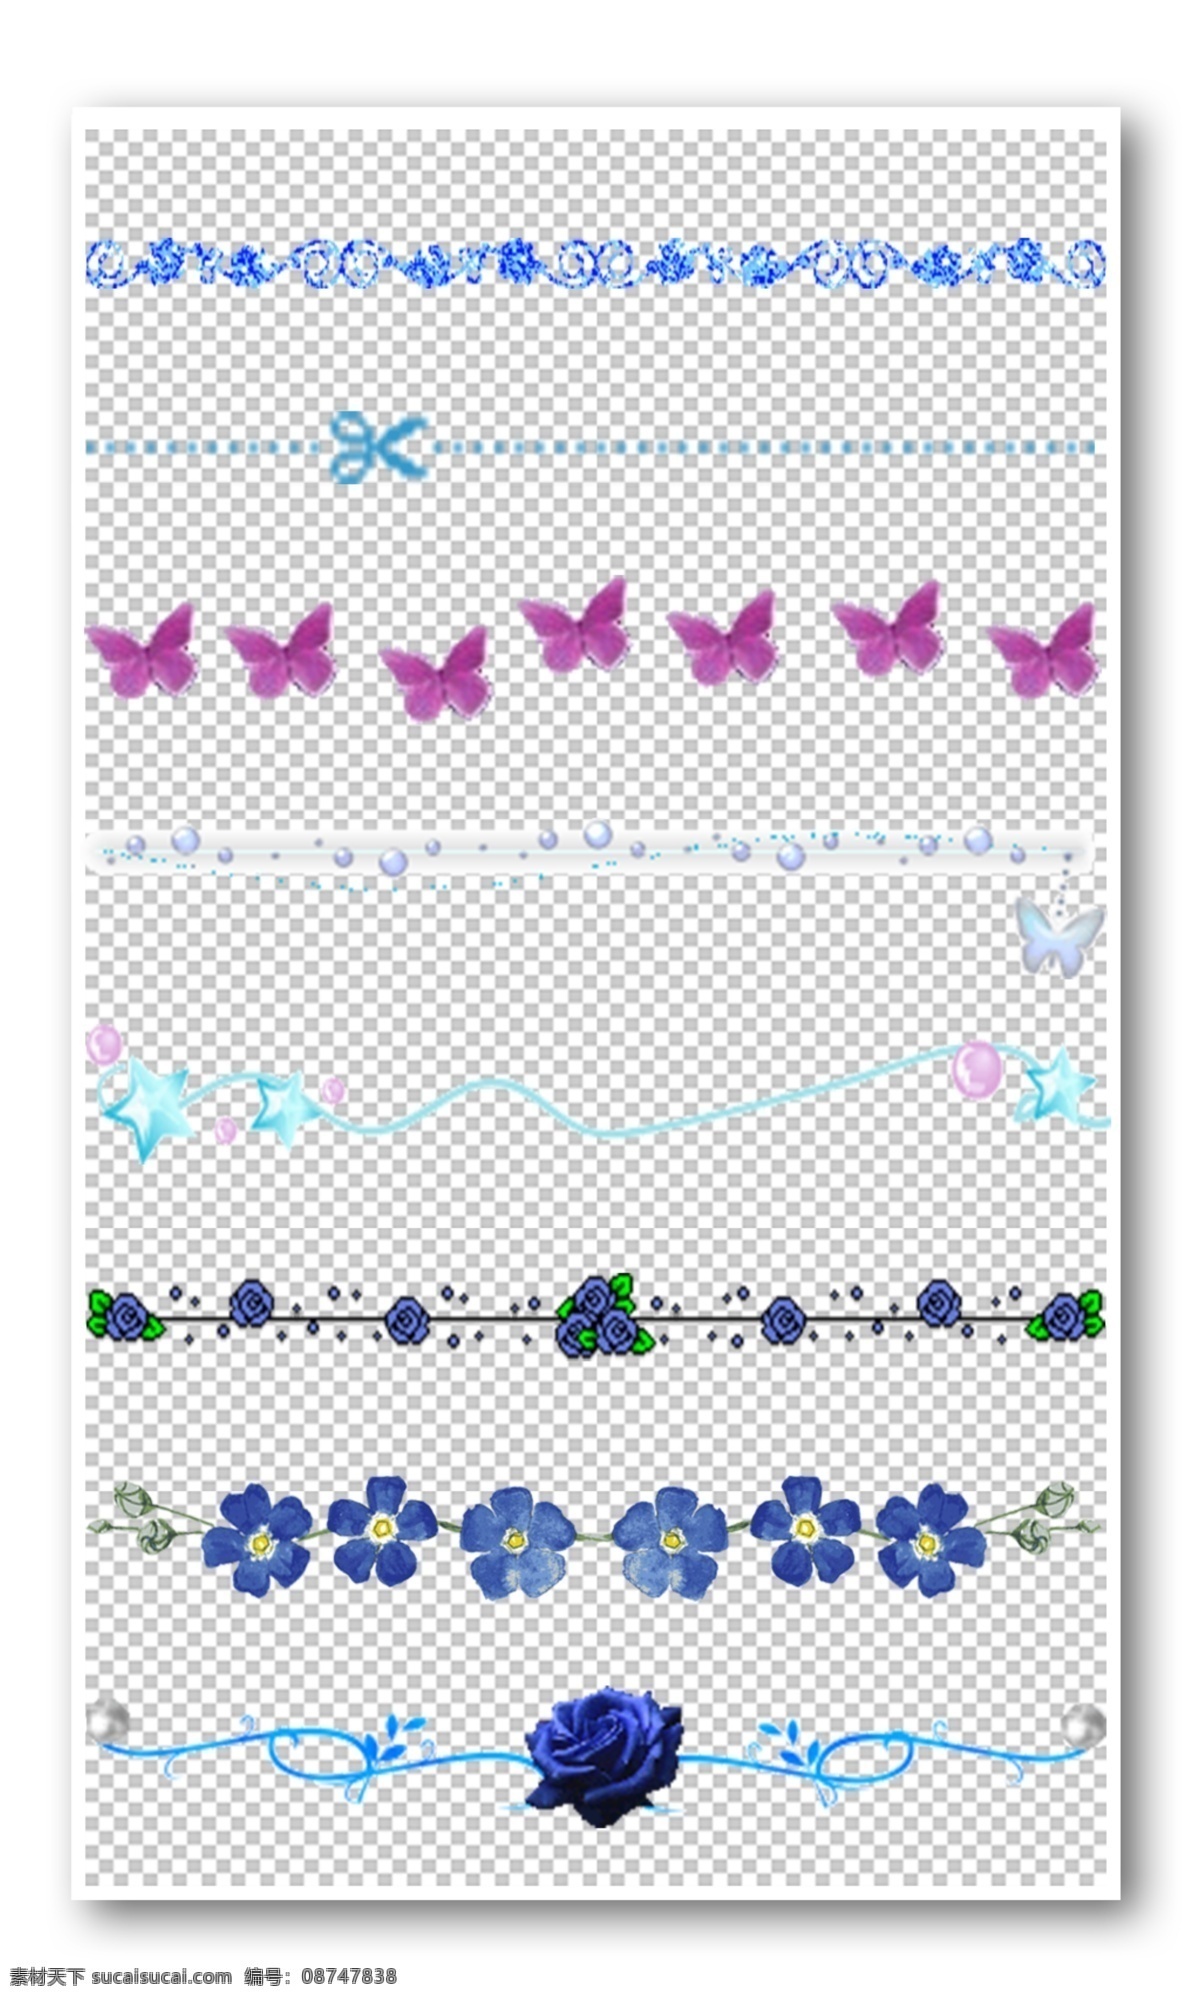 蓝色 花纹 边框 元素 可爱 动物 花朵 花纹边框 卡通 植物 手绘 小报边框 手抄报边框 免费模版 平面模版 元素模版